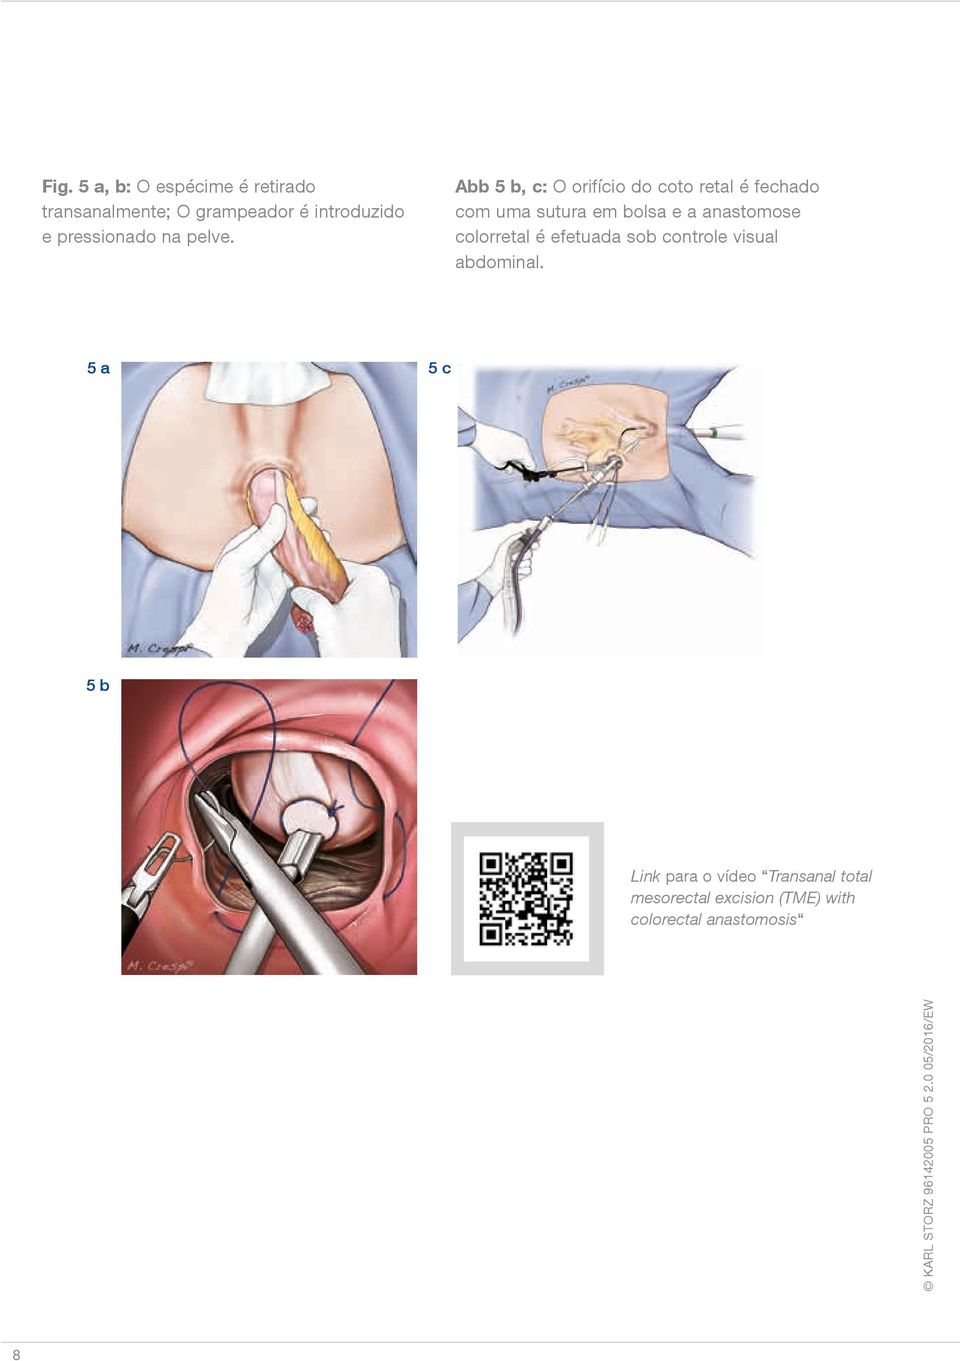 Abb 5 b, c: O orifício do coto retal é fechado com uma sutura em bolsa e a anastomose